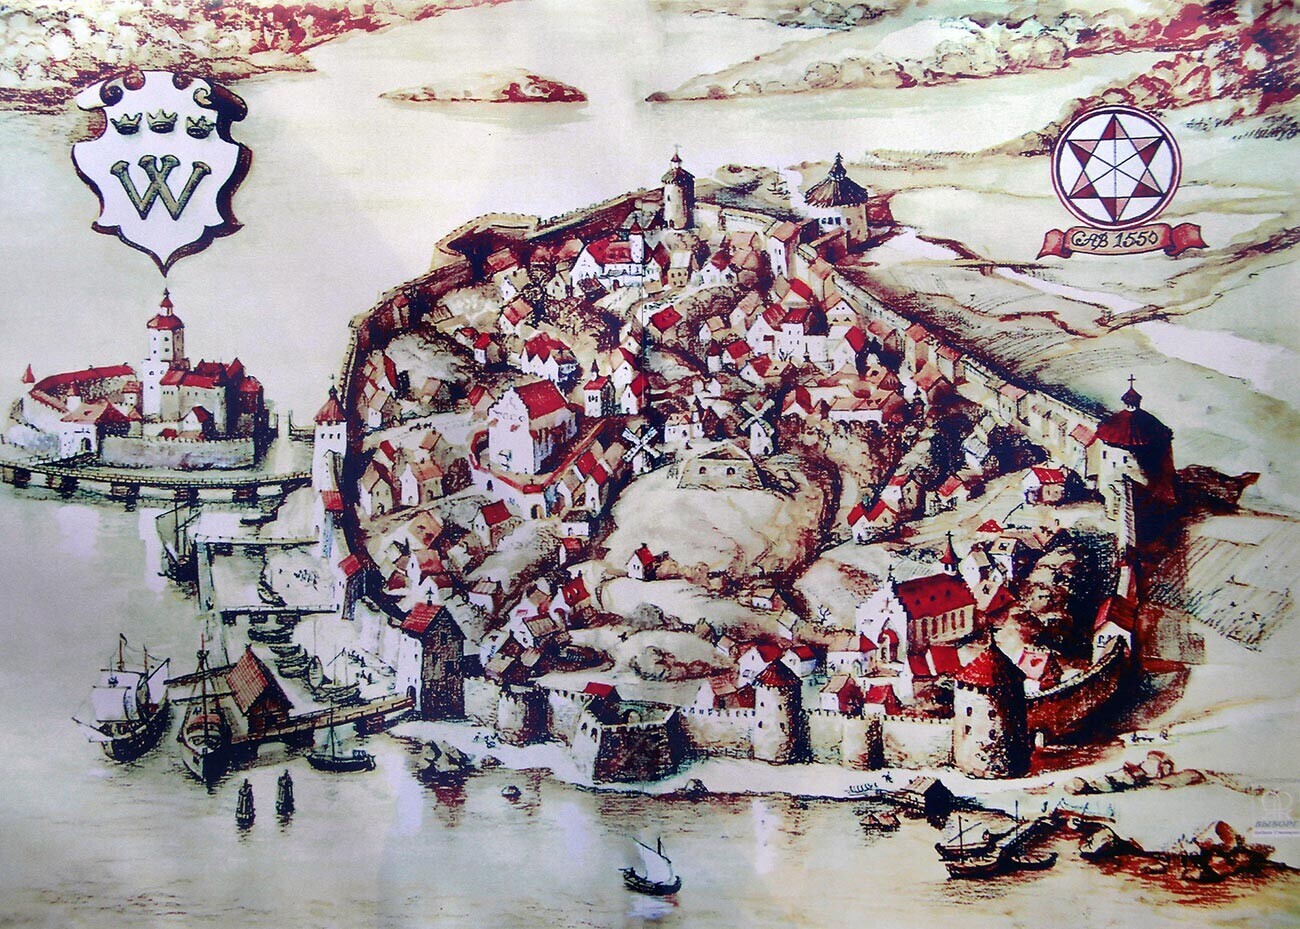 1550-1560